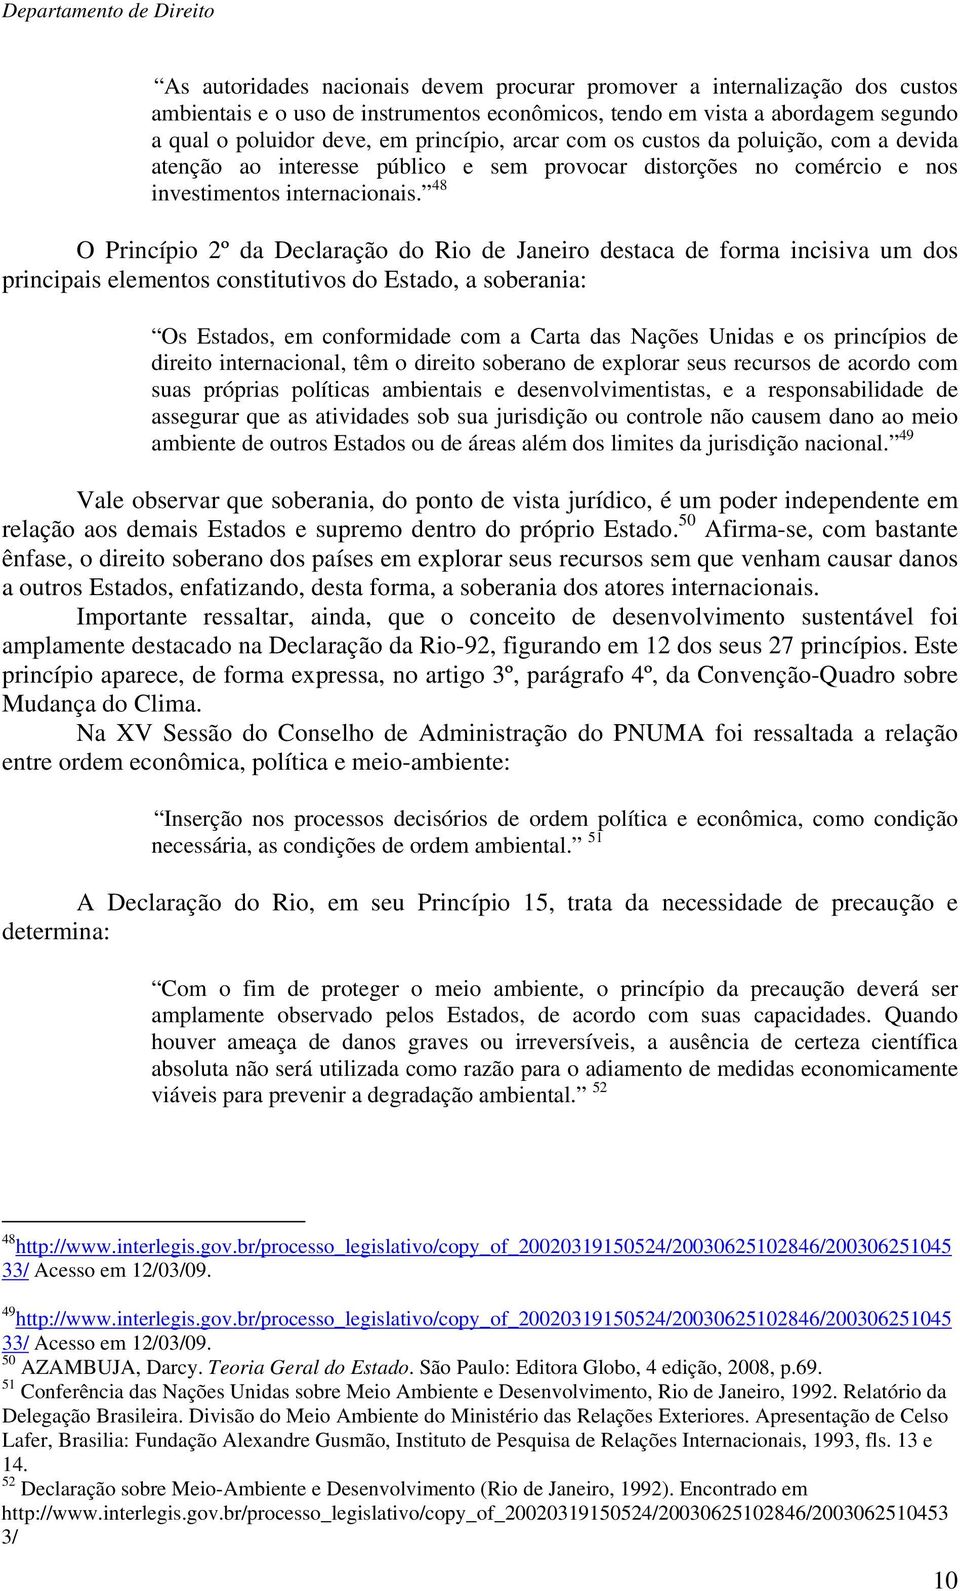 48 O Princípio 2º da Declaração do Rio de Janeiro destaca de forma incisiva um dos principais elementos constitutivos do Estado, a soberania: Os Estados, em conformidade com a Carta das Nações Unidas